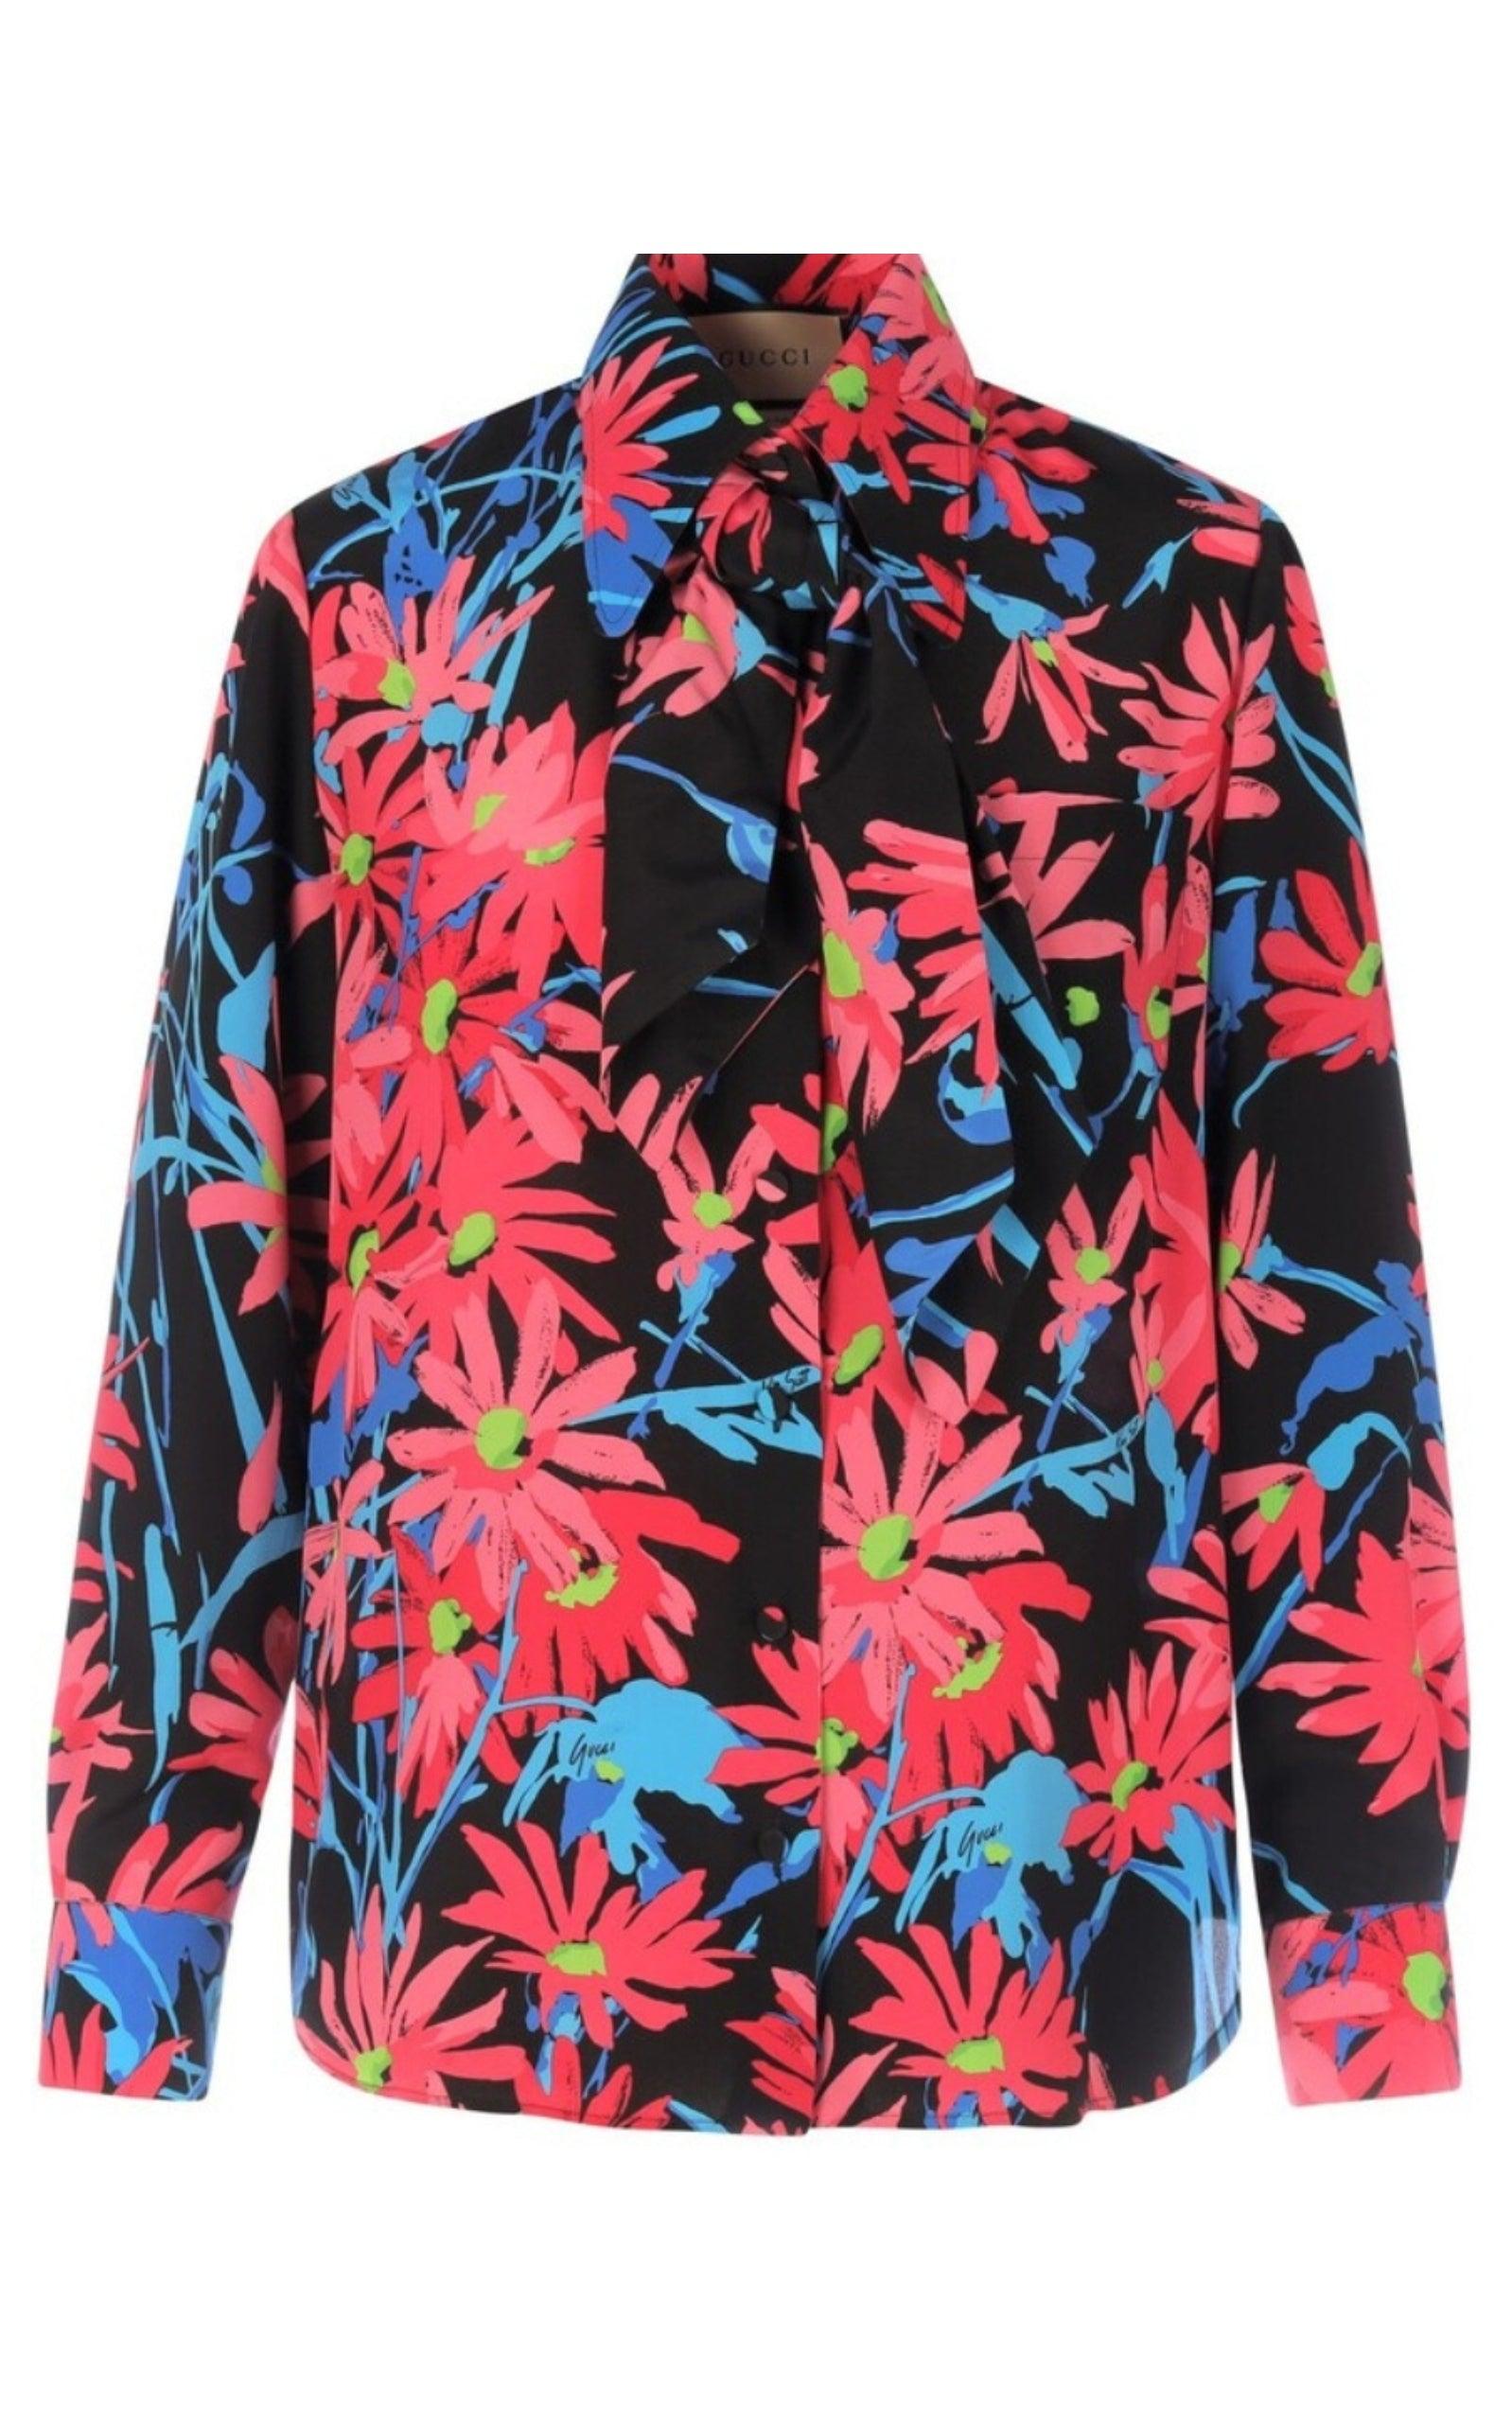 Gucci x Ken Scott Floral Print Silk Shirt | Runway Catalog